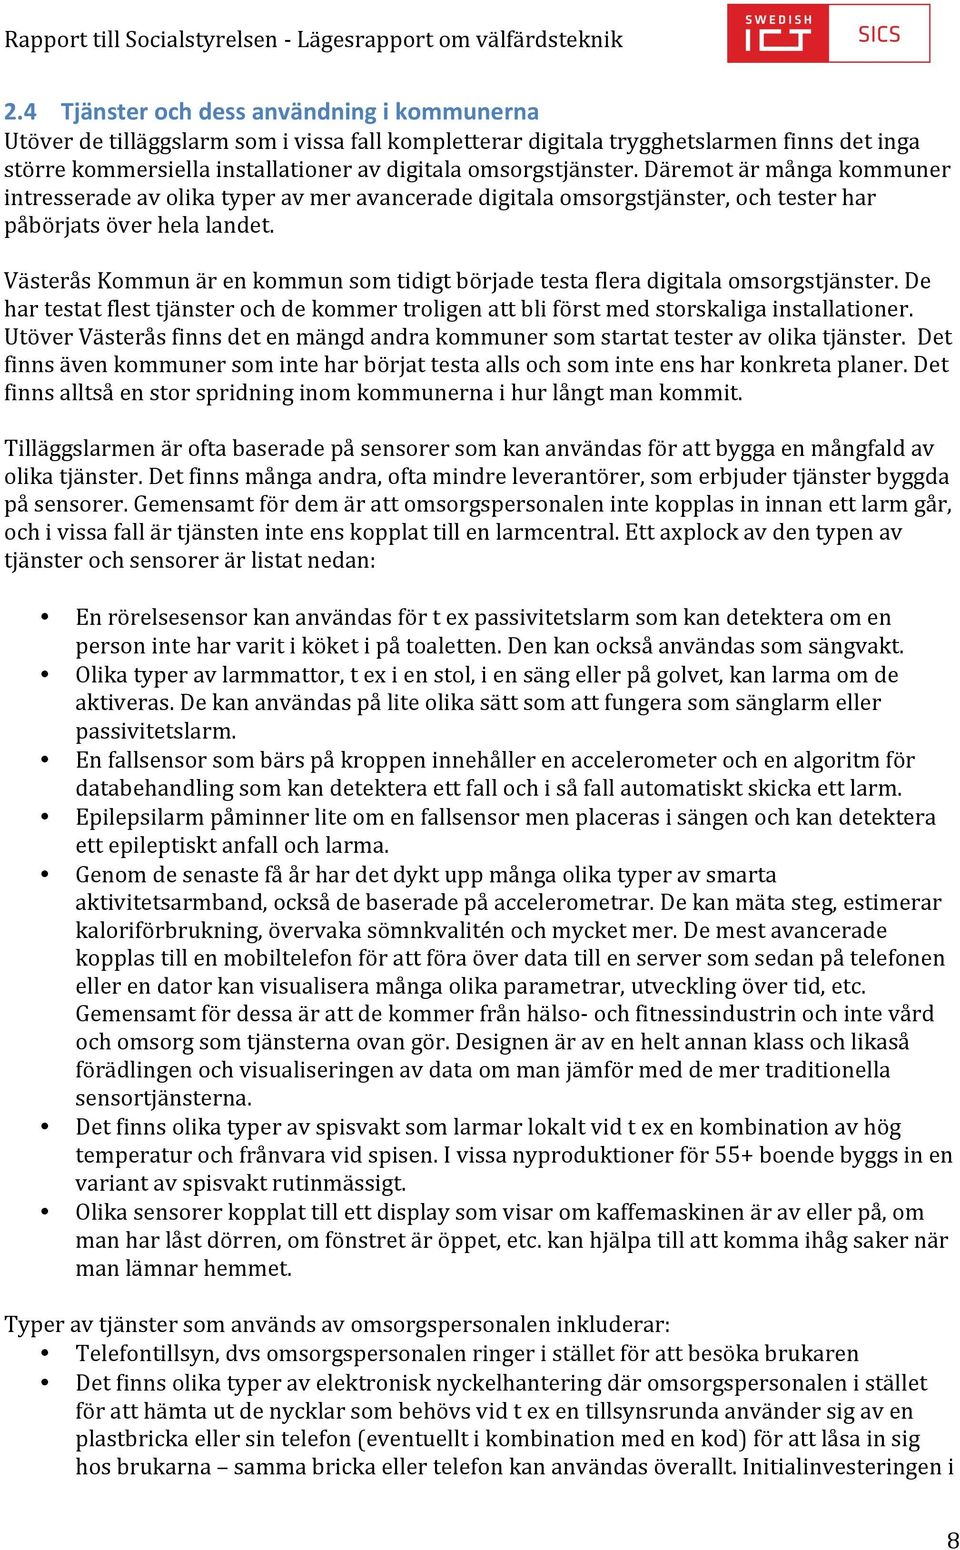 Västerås Kommun är en kommun som tidigt började testa flera digitala omsorgstjänster. De har testat flest tjänster och de kommer troligen att bli först med storskaliga installationer.